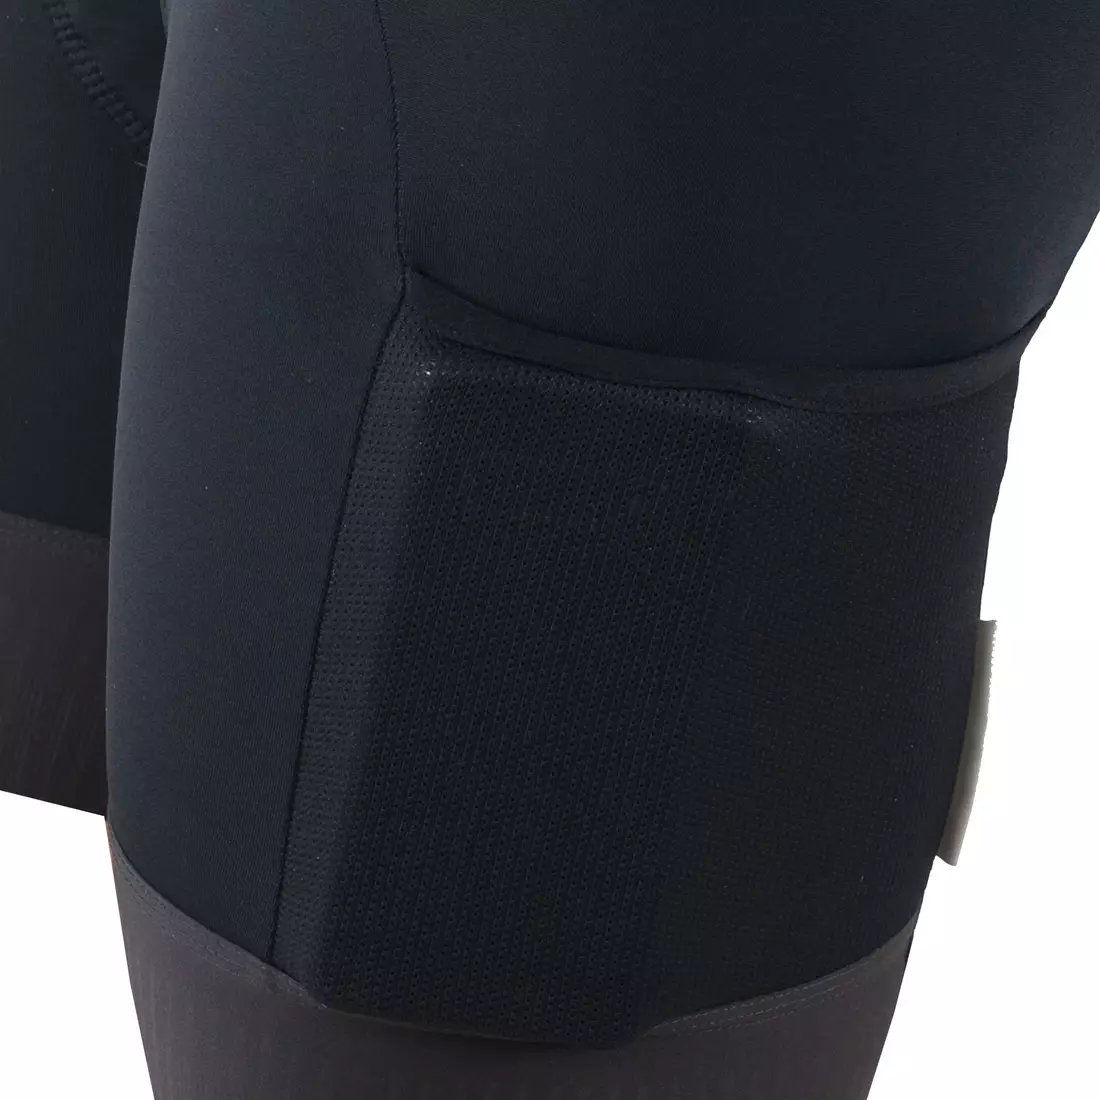 KAYMAQ DESIGN KQSII-4003 nadrágtartós női kerékpáros rövidnadrág, fekete